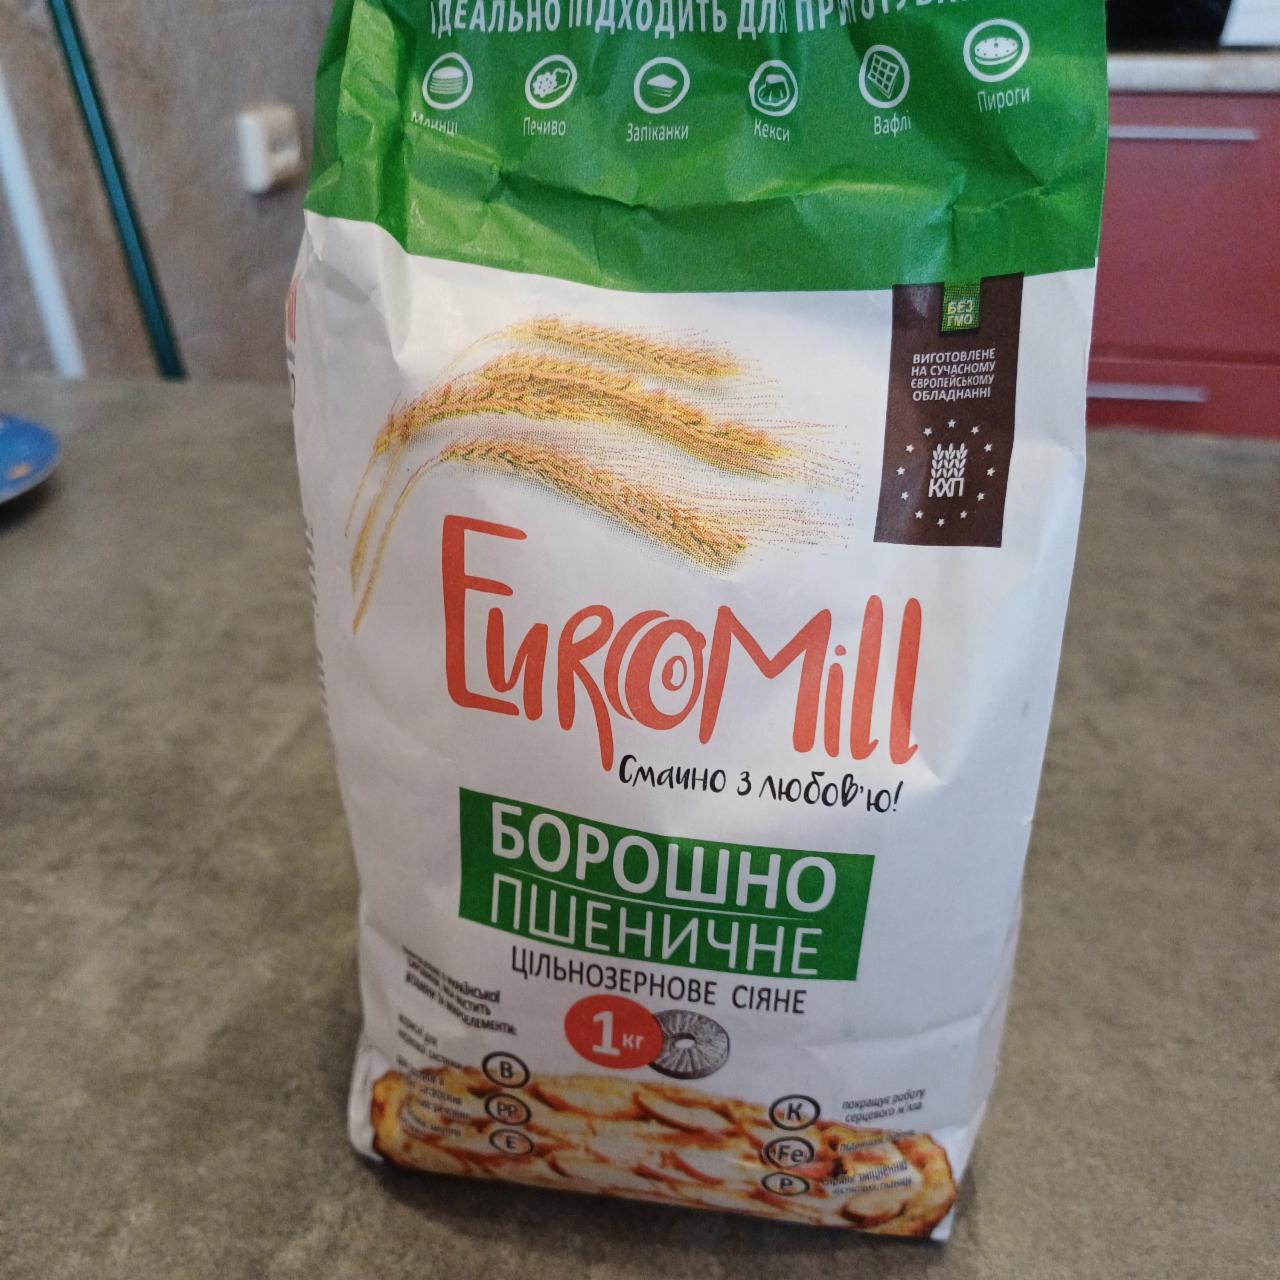 Фото - Борошно пшеничне цільнозернове сіяне EuroMill